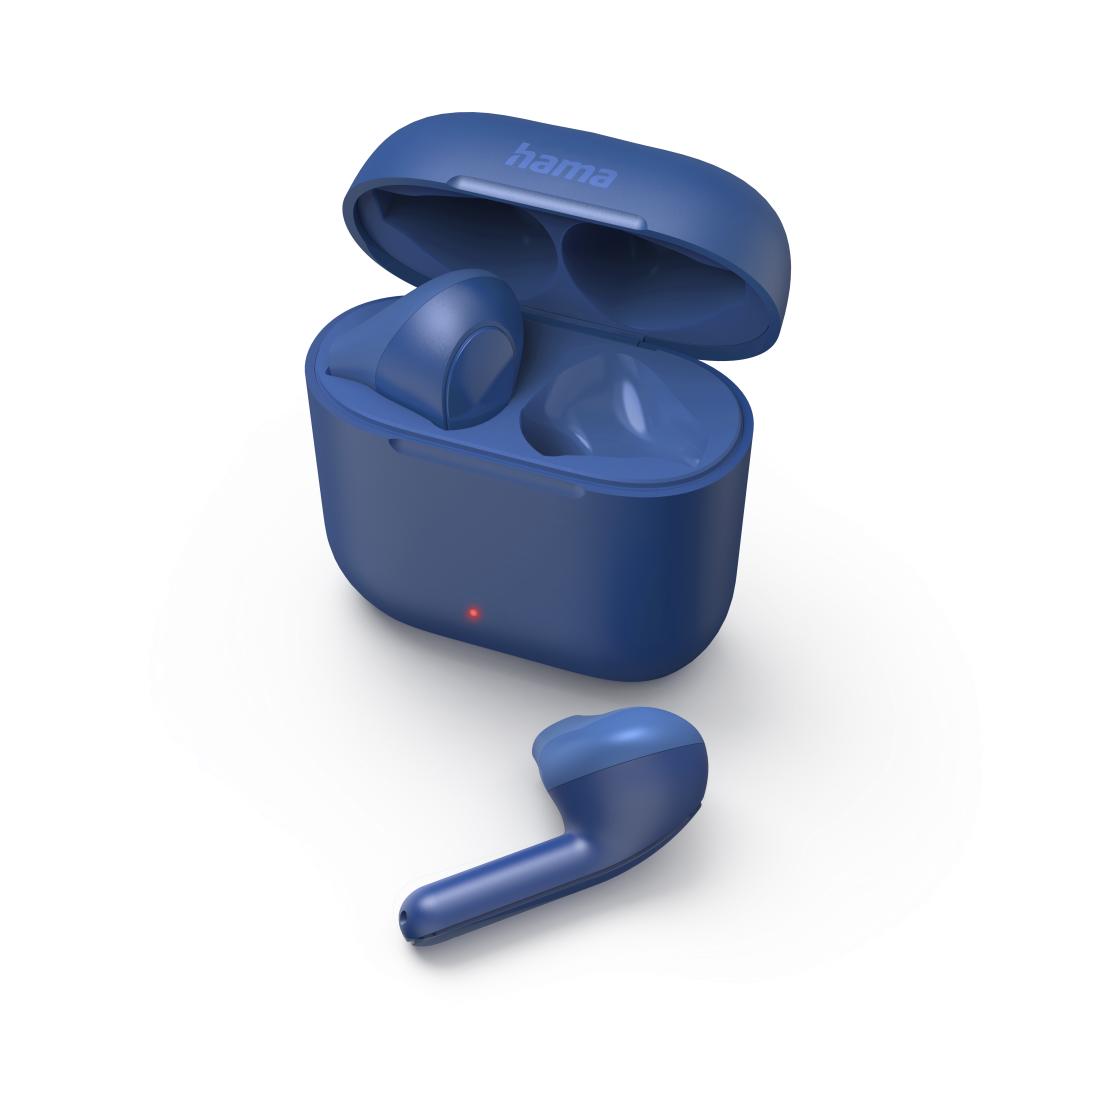 Hama Freedom Light In-Ear True Wireless Earbuds - Blue | 458940 (7519320211644)